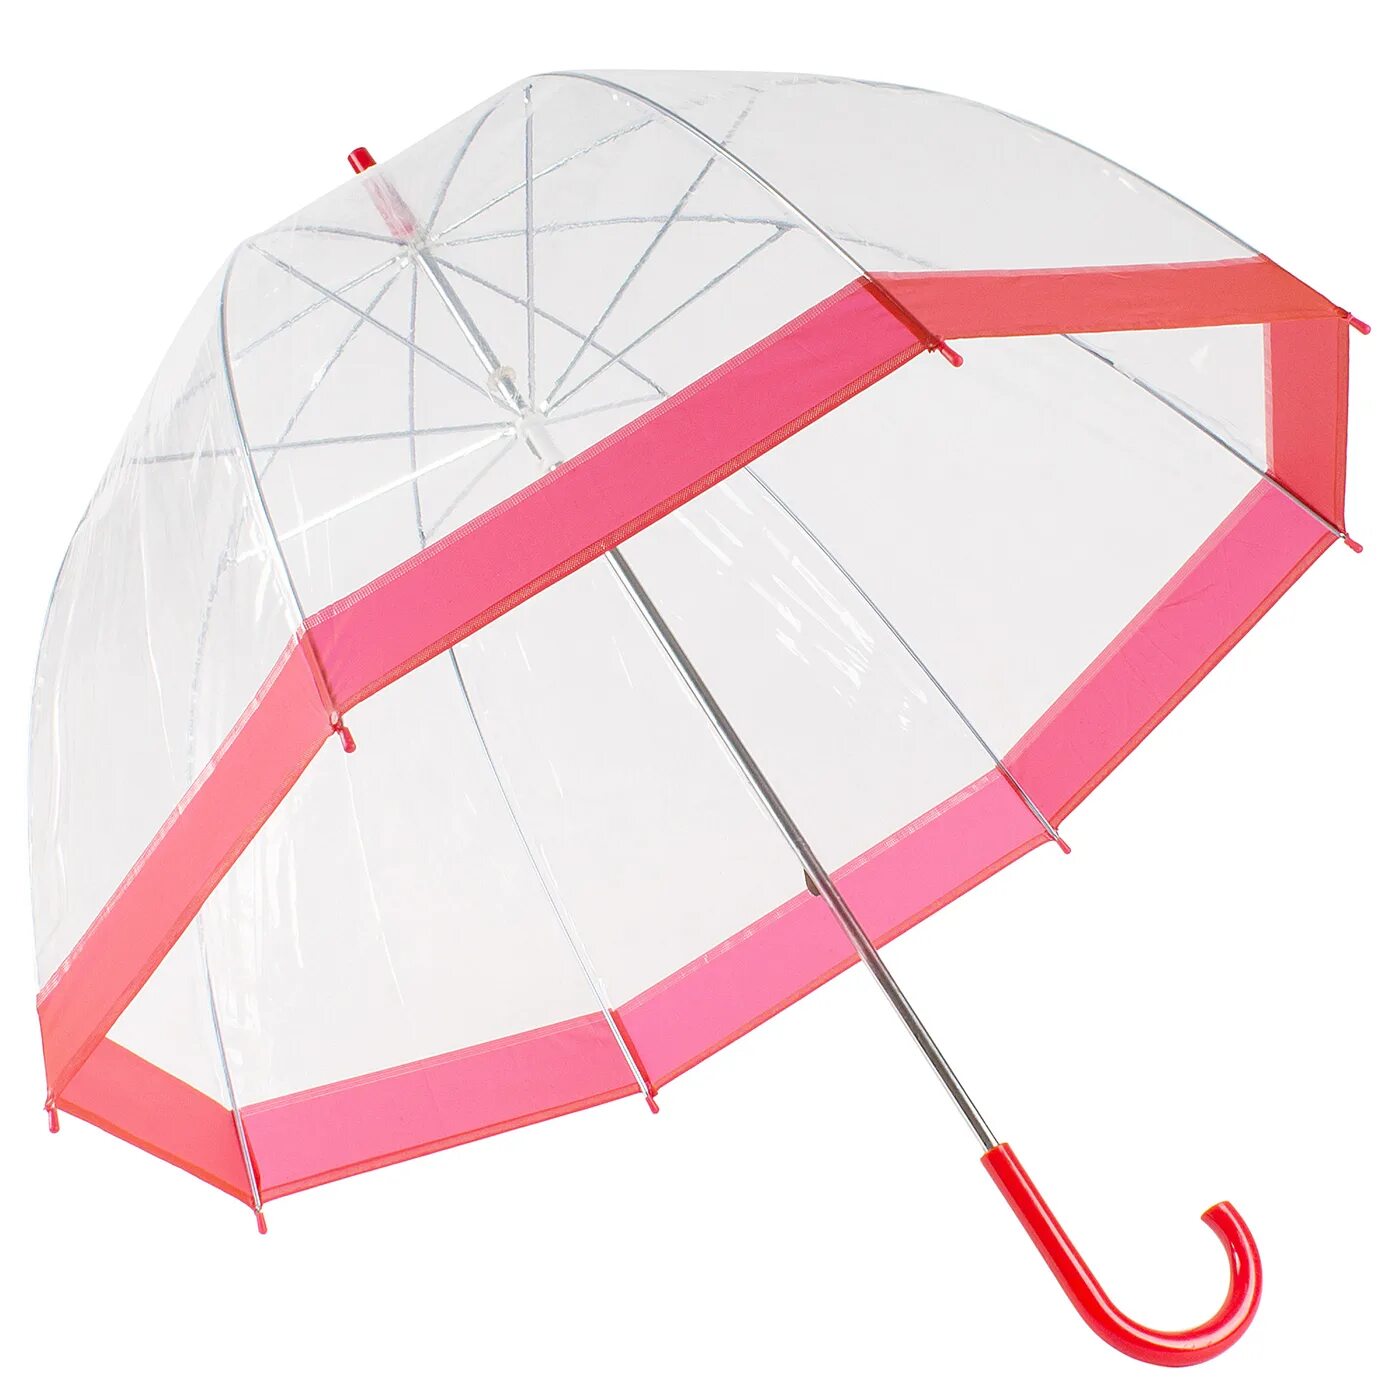 Купить прозрачный зонт. Зонт Эврика прозрачный. Зонт Эврика 99550 (прозрачный). Зонт трость прозрачный купол 0009 диаметр. Зонт Гросс.